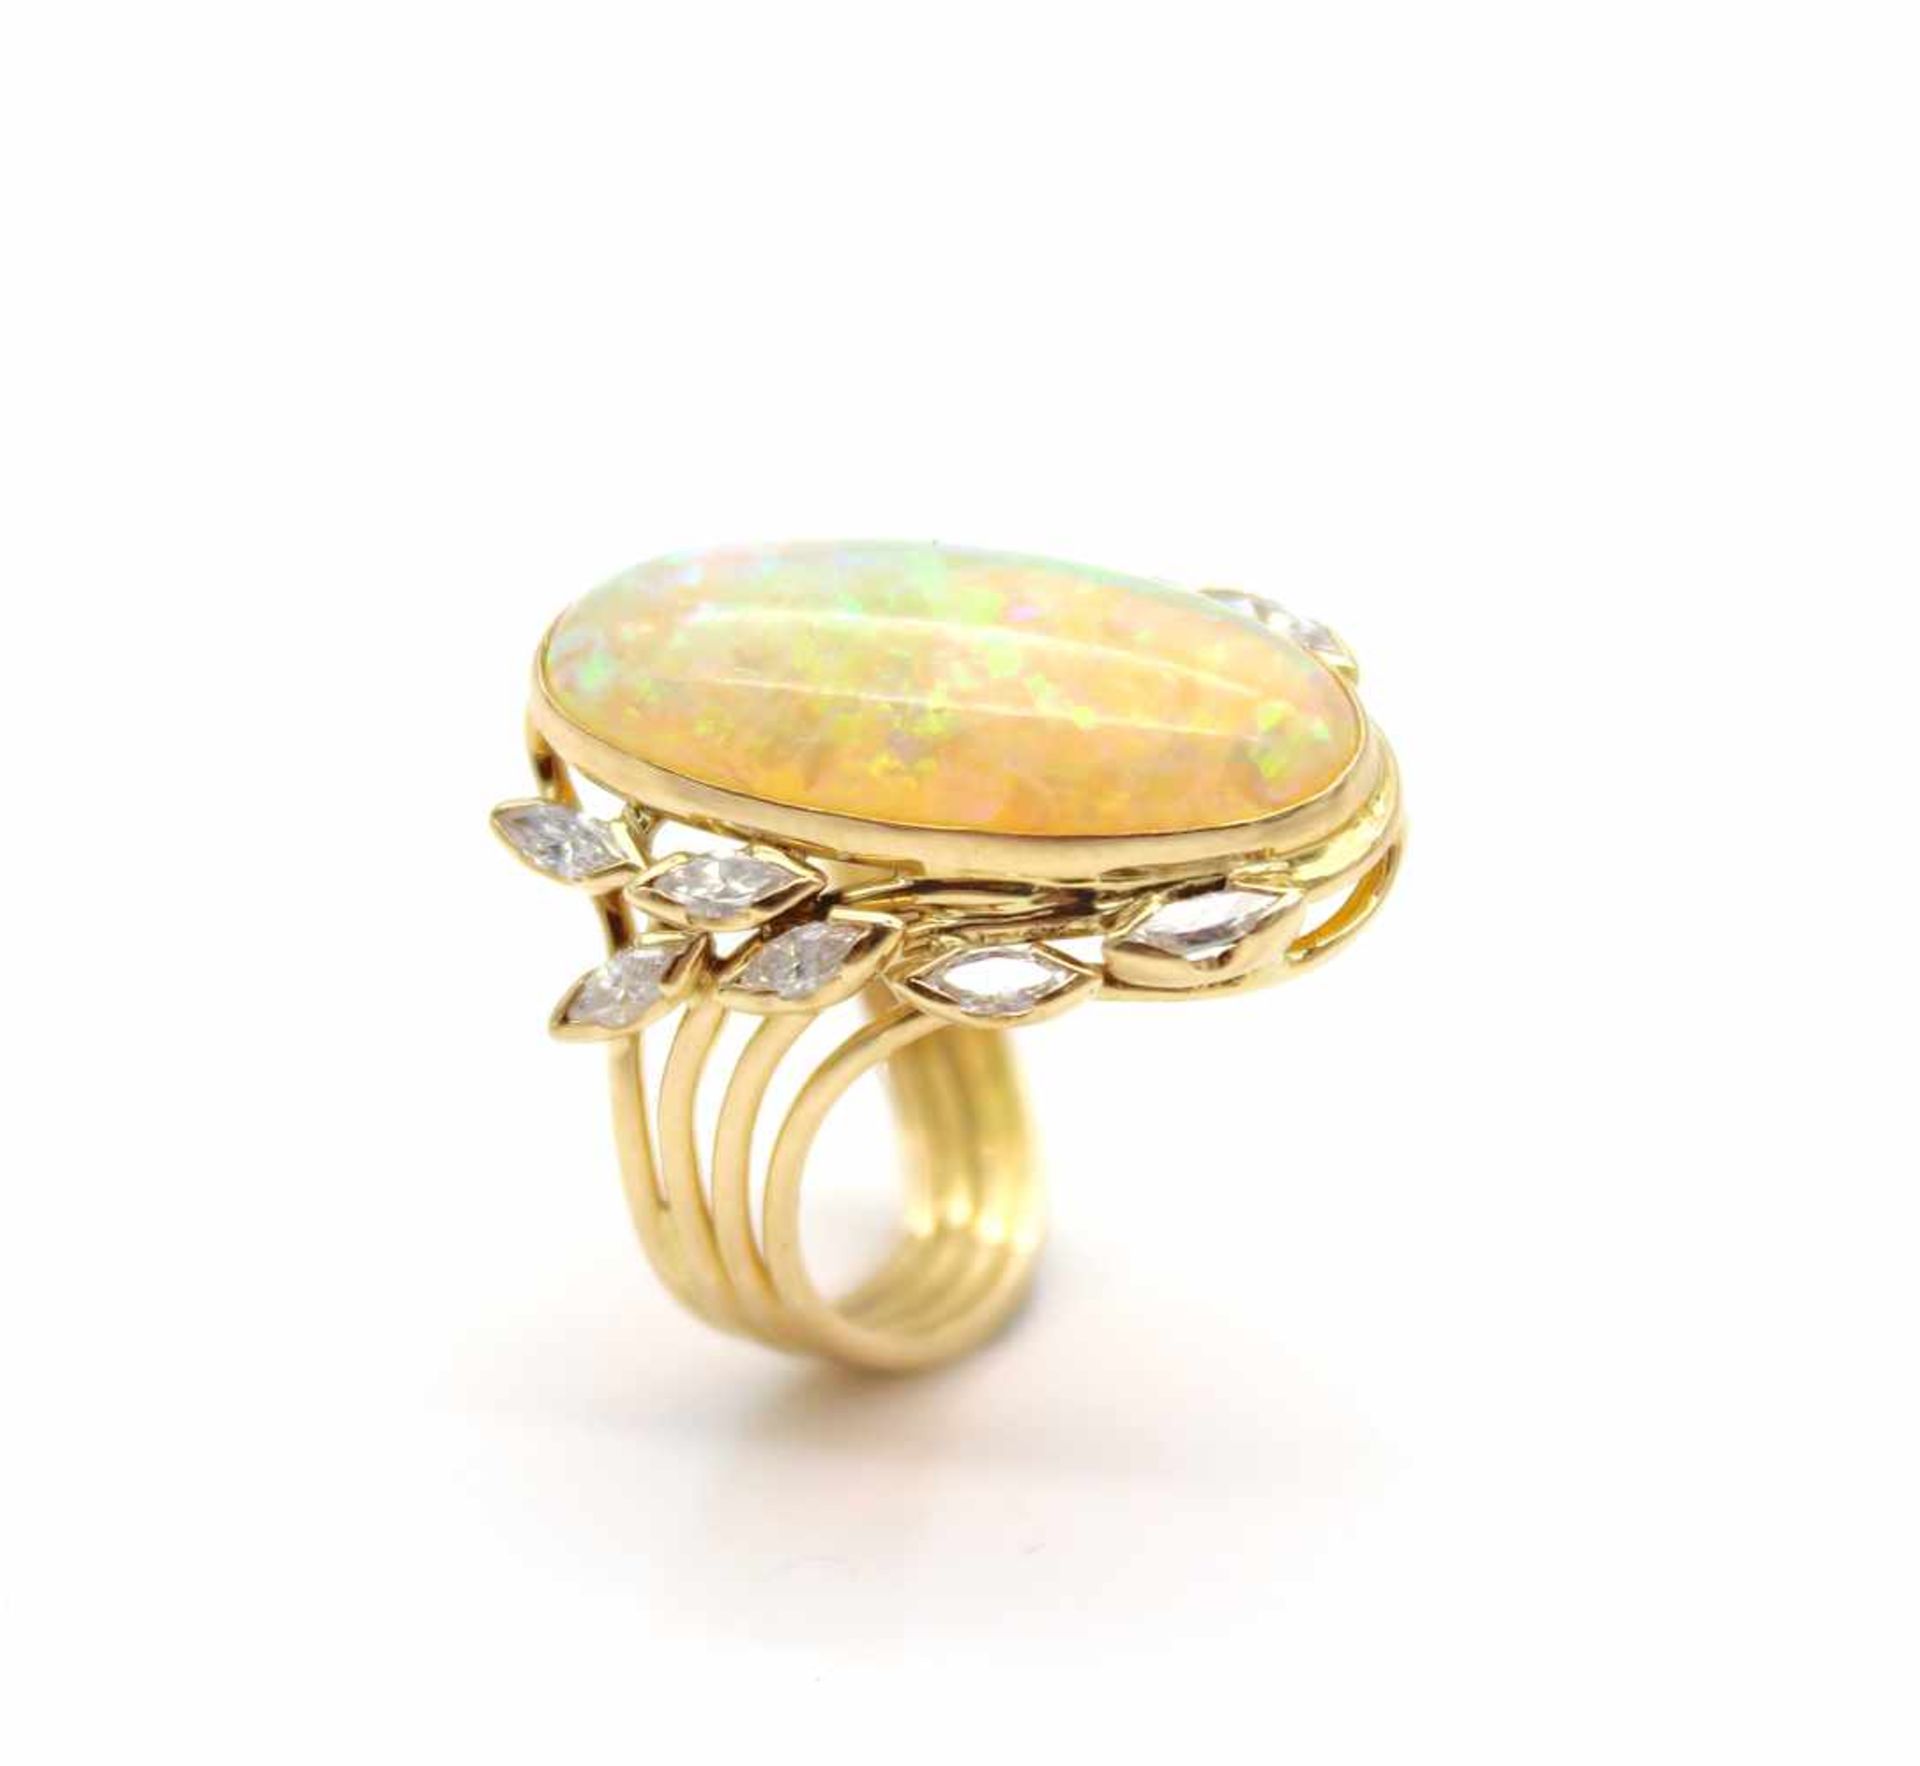 Ring aus 750er Gold mit einem Edelopal und 12 Diamanten, gesamt ca. 0,48 ct mit hohem Farbgrad und - Bild 3 aus 3